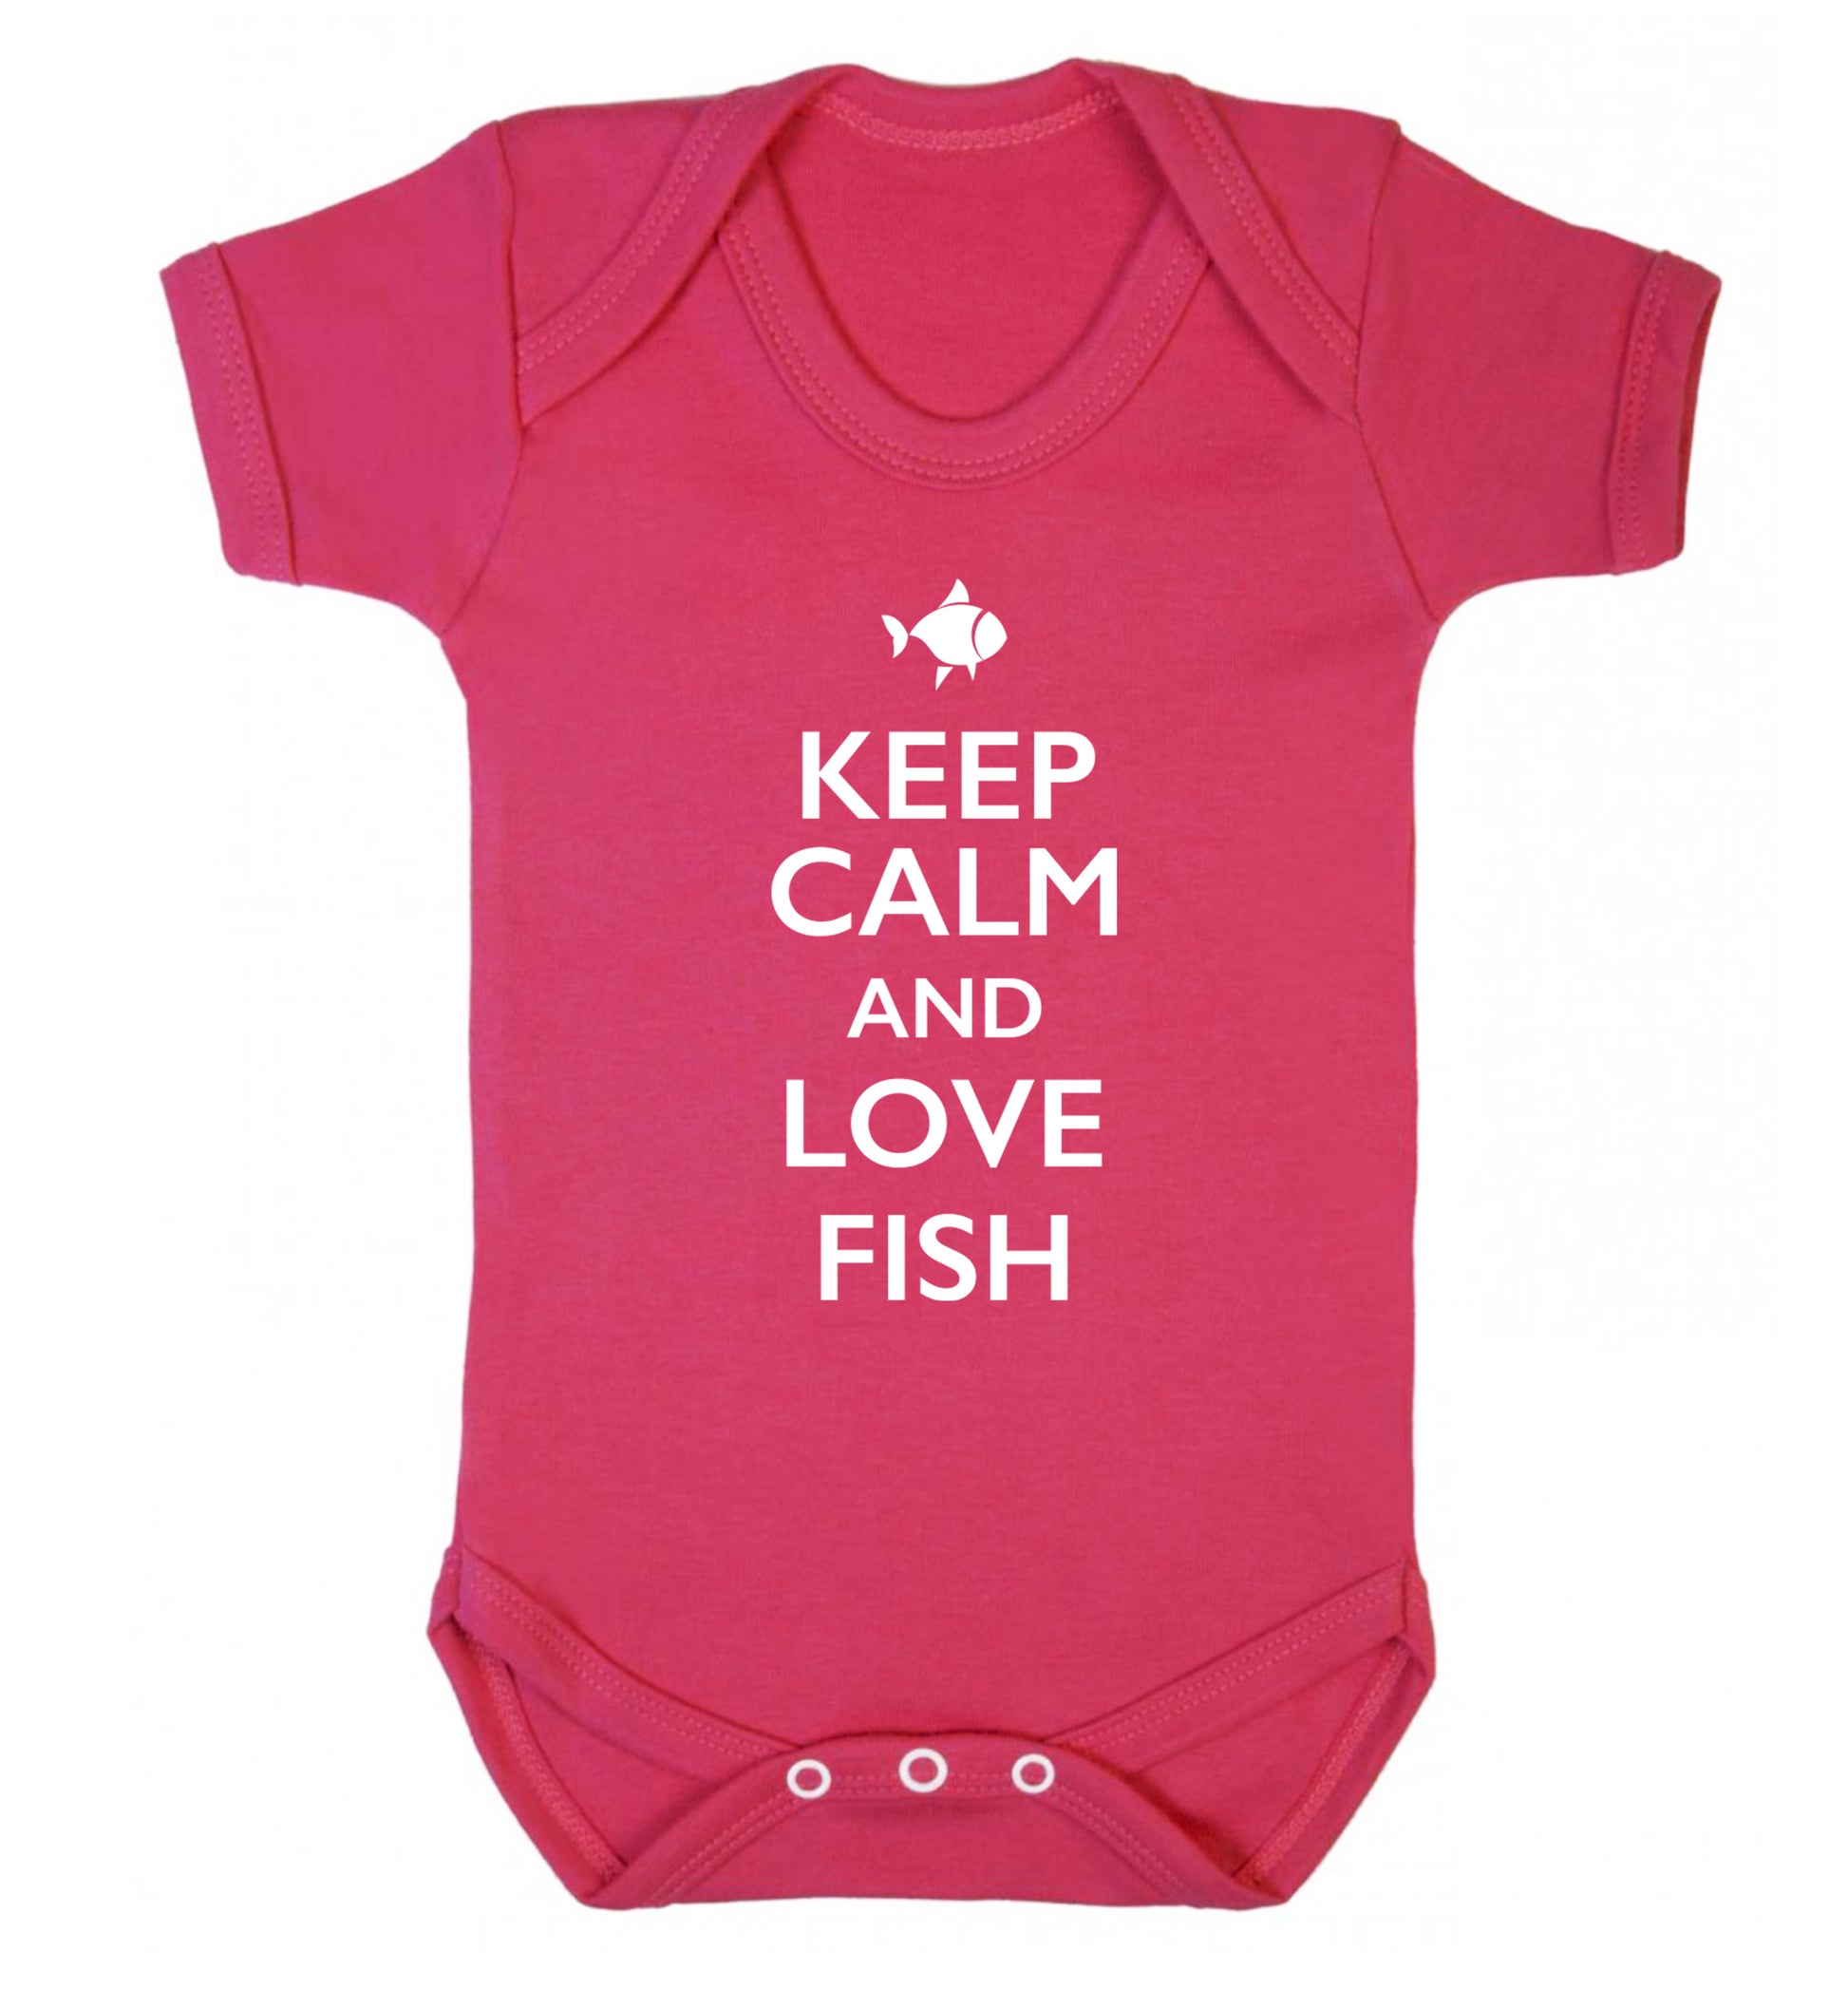 Keep calm and love fish Baby Vest dark pink 18-24 months